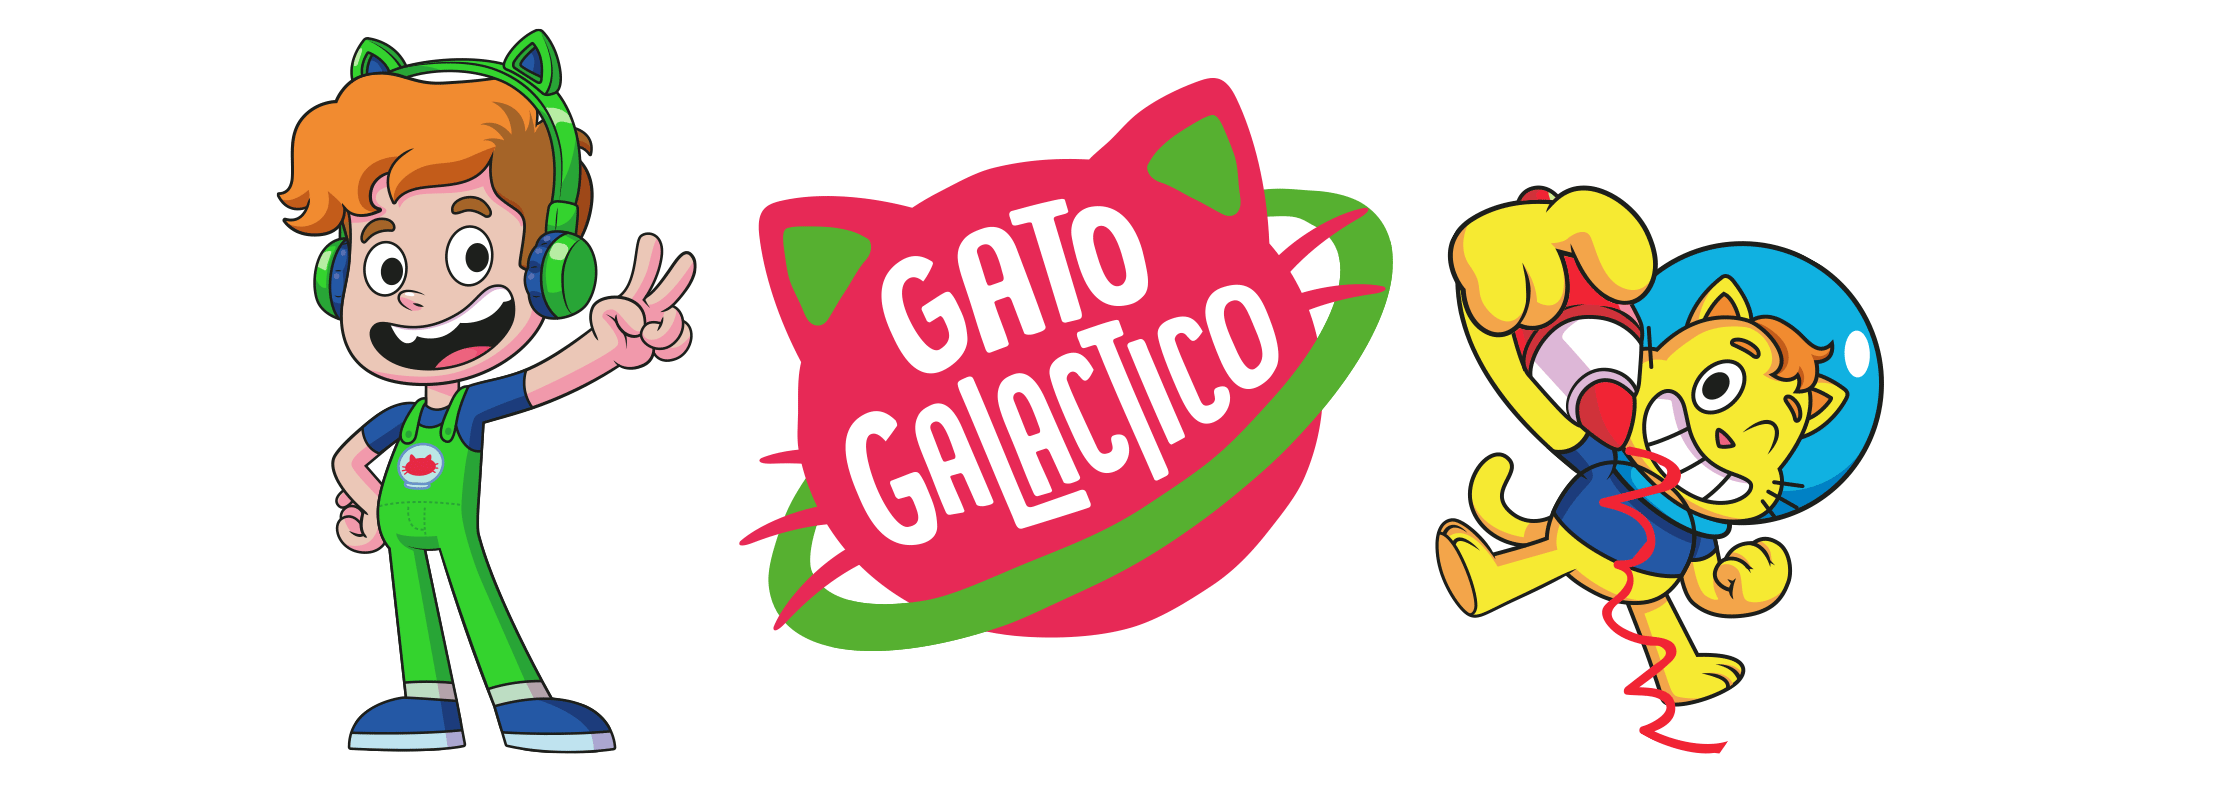 Gato Galactico